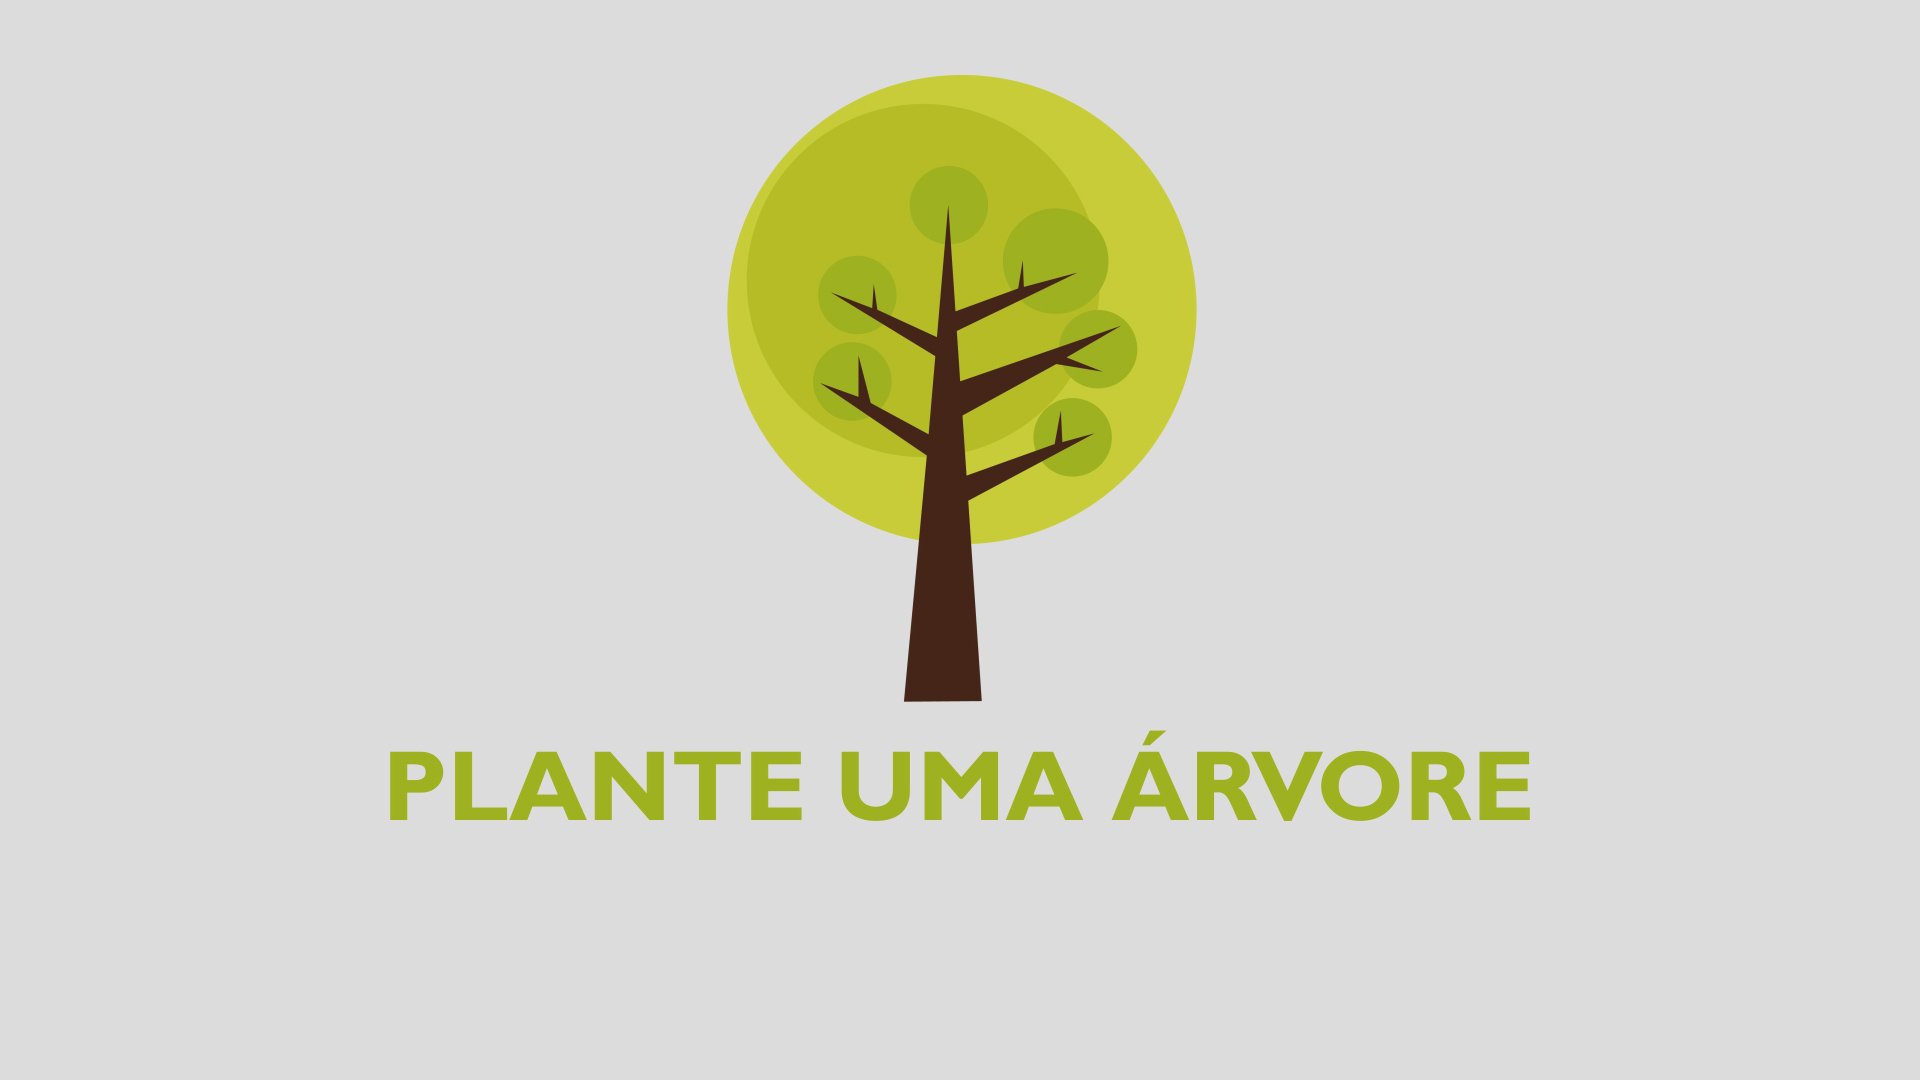 Plante uma árvore em celebração aos 150 anos do metodismo permanente no Brasil